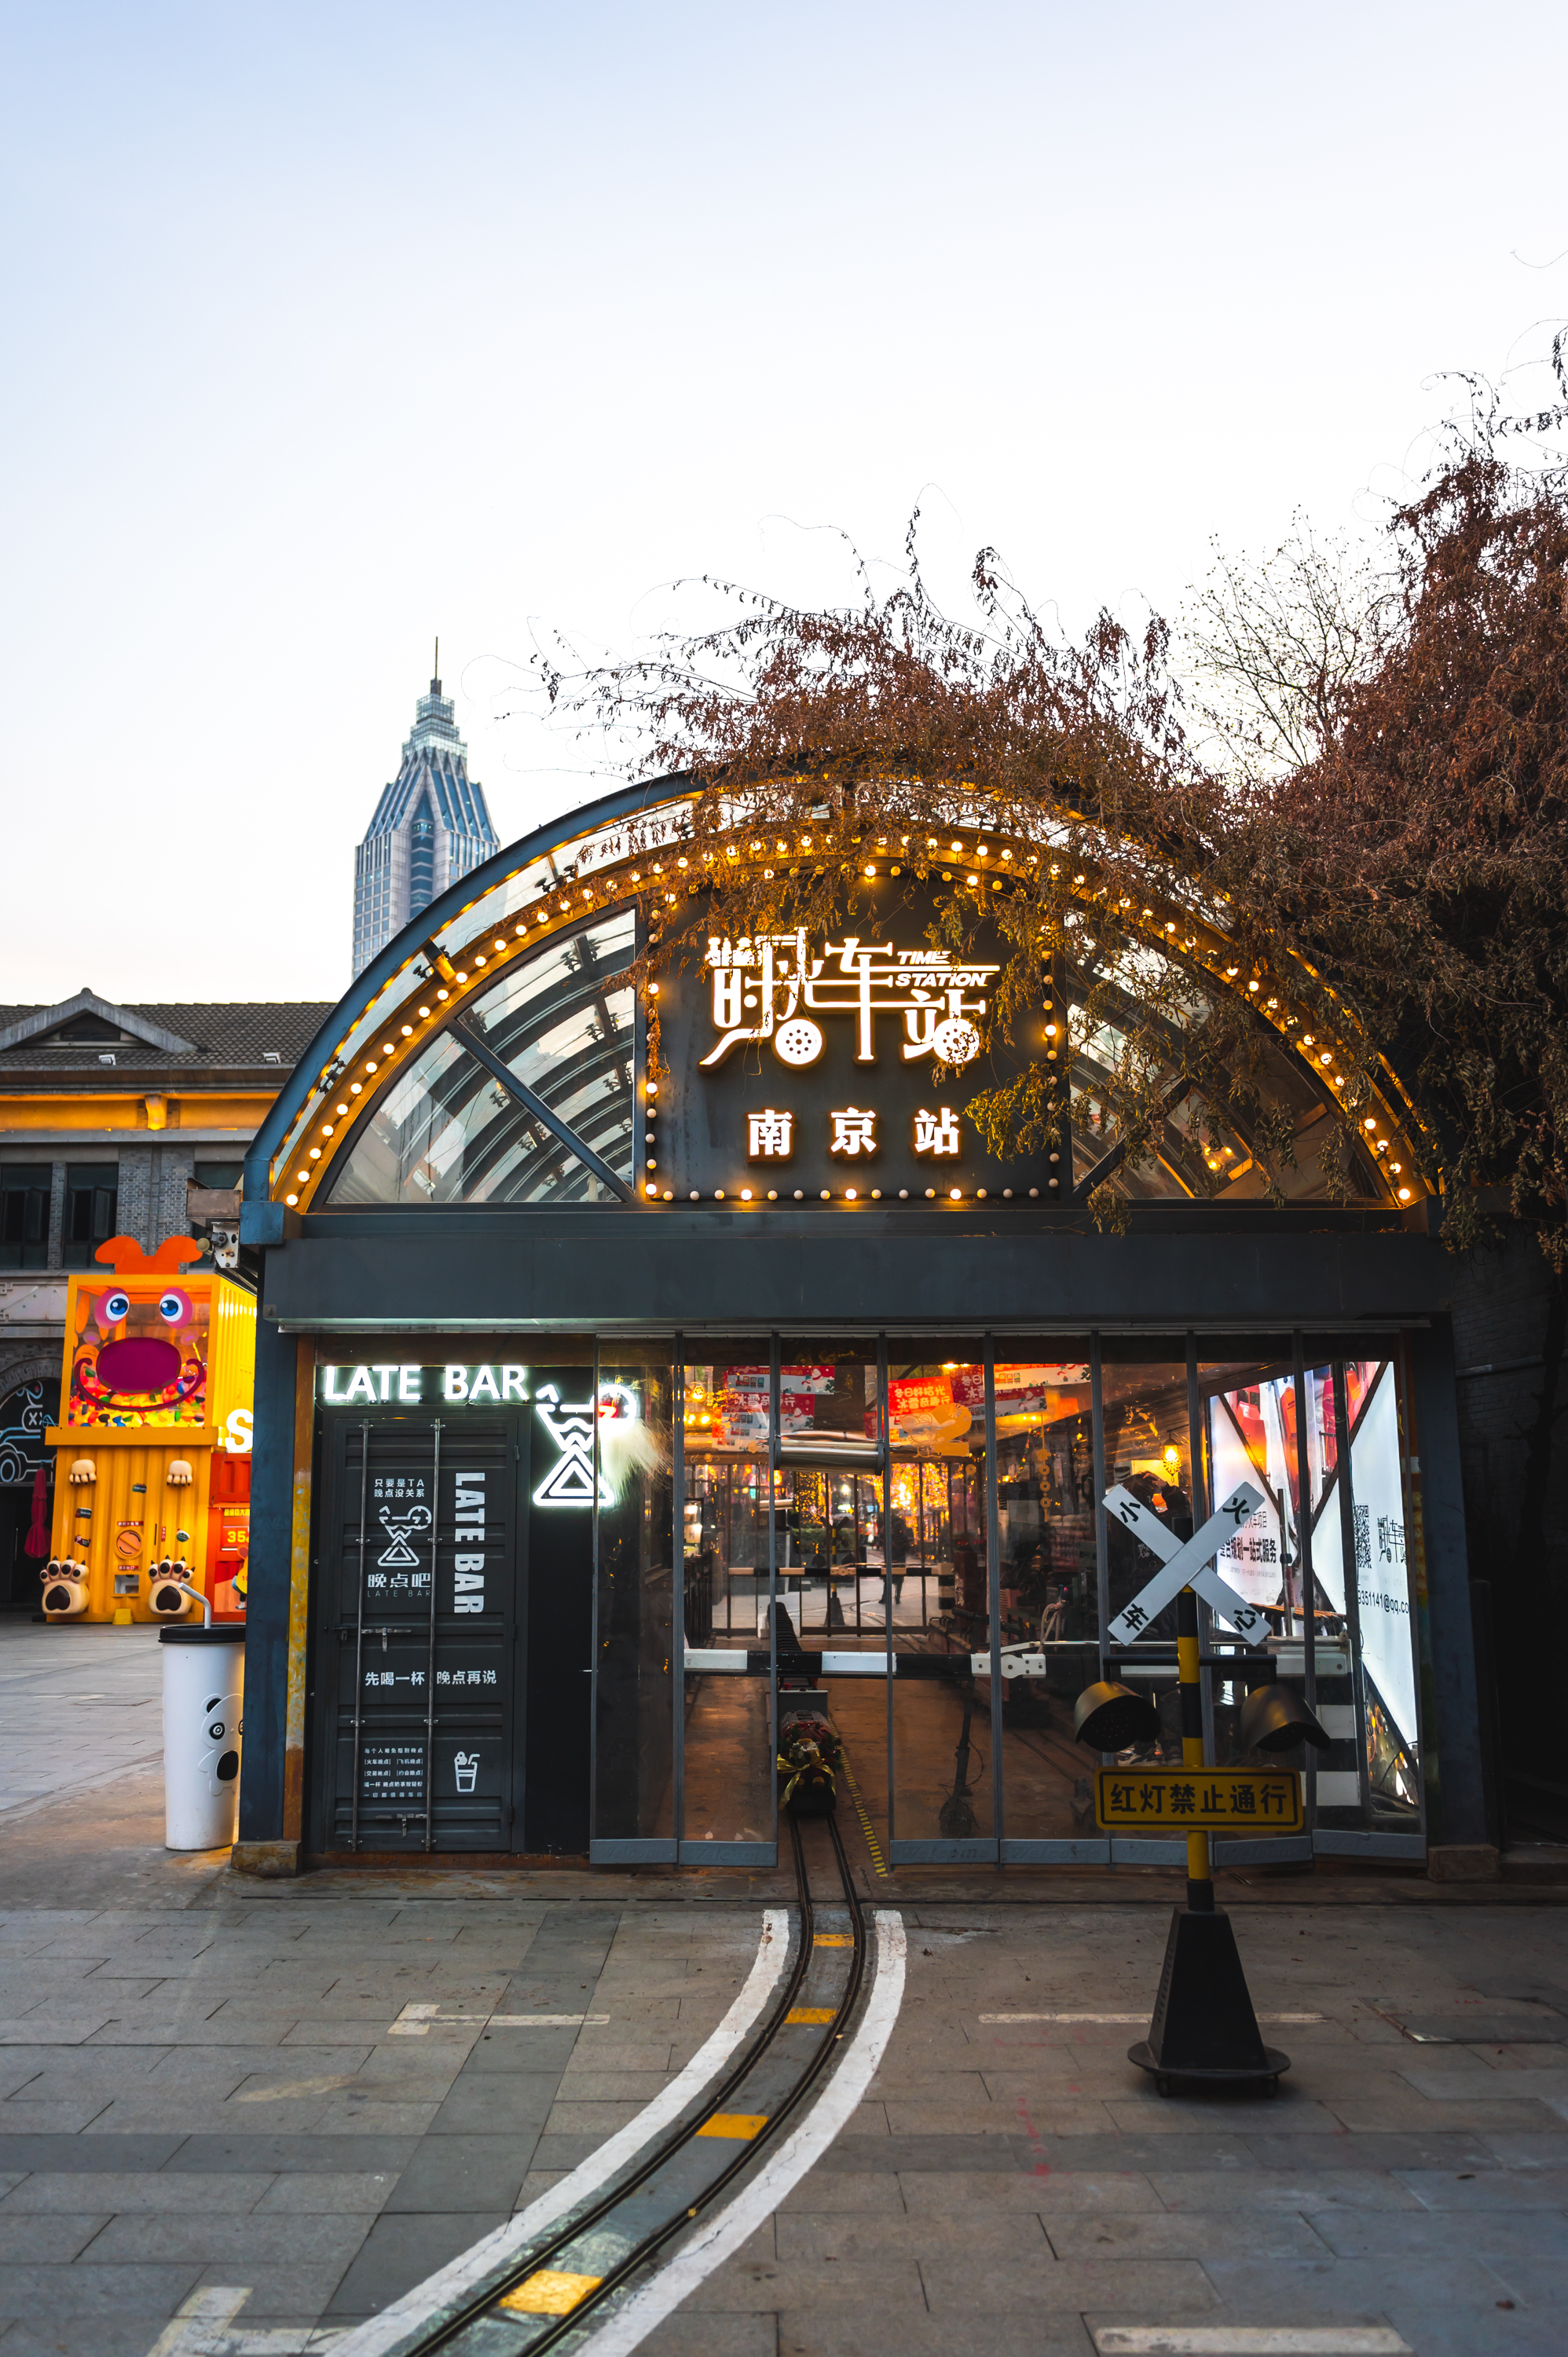 1912历史街区,夜色下藏着的老金陵时尚天地,堪称南京不夜城